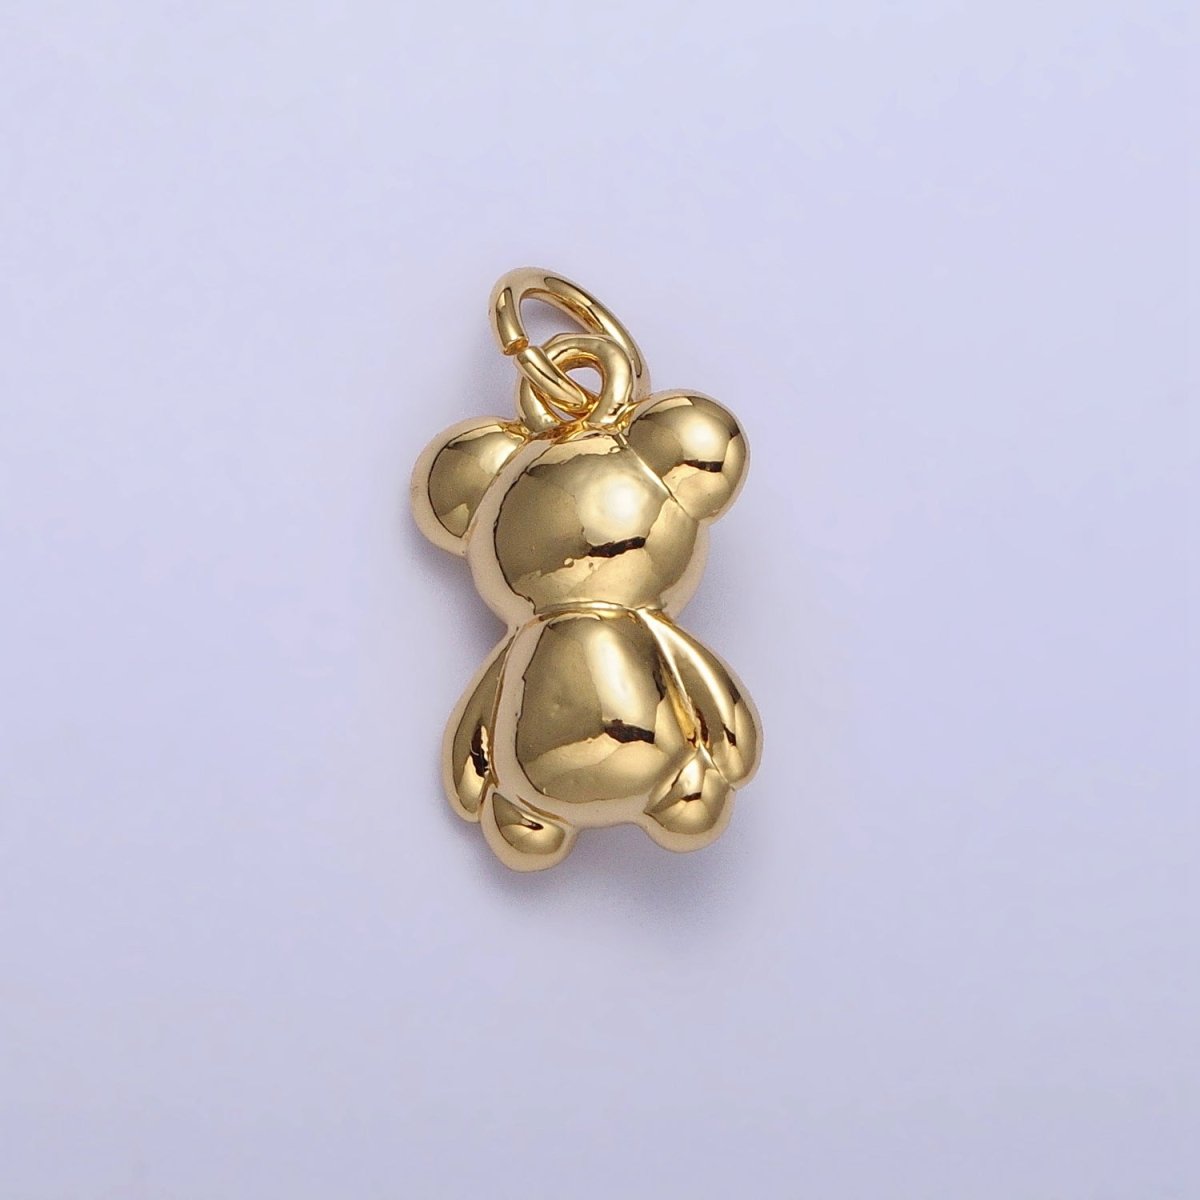 OS Gold Teddy Bear Animal Minimalist Mini Add-On Charm | AC215 - DLUXCA